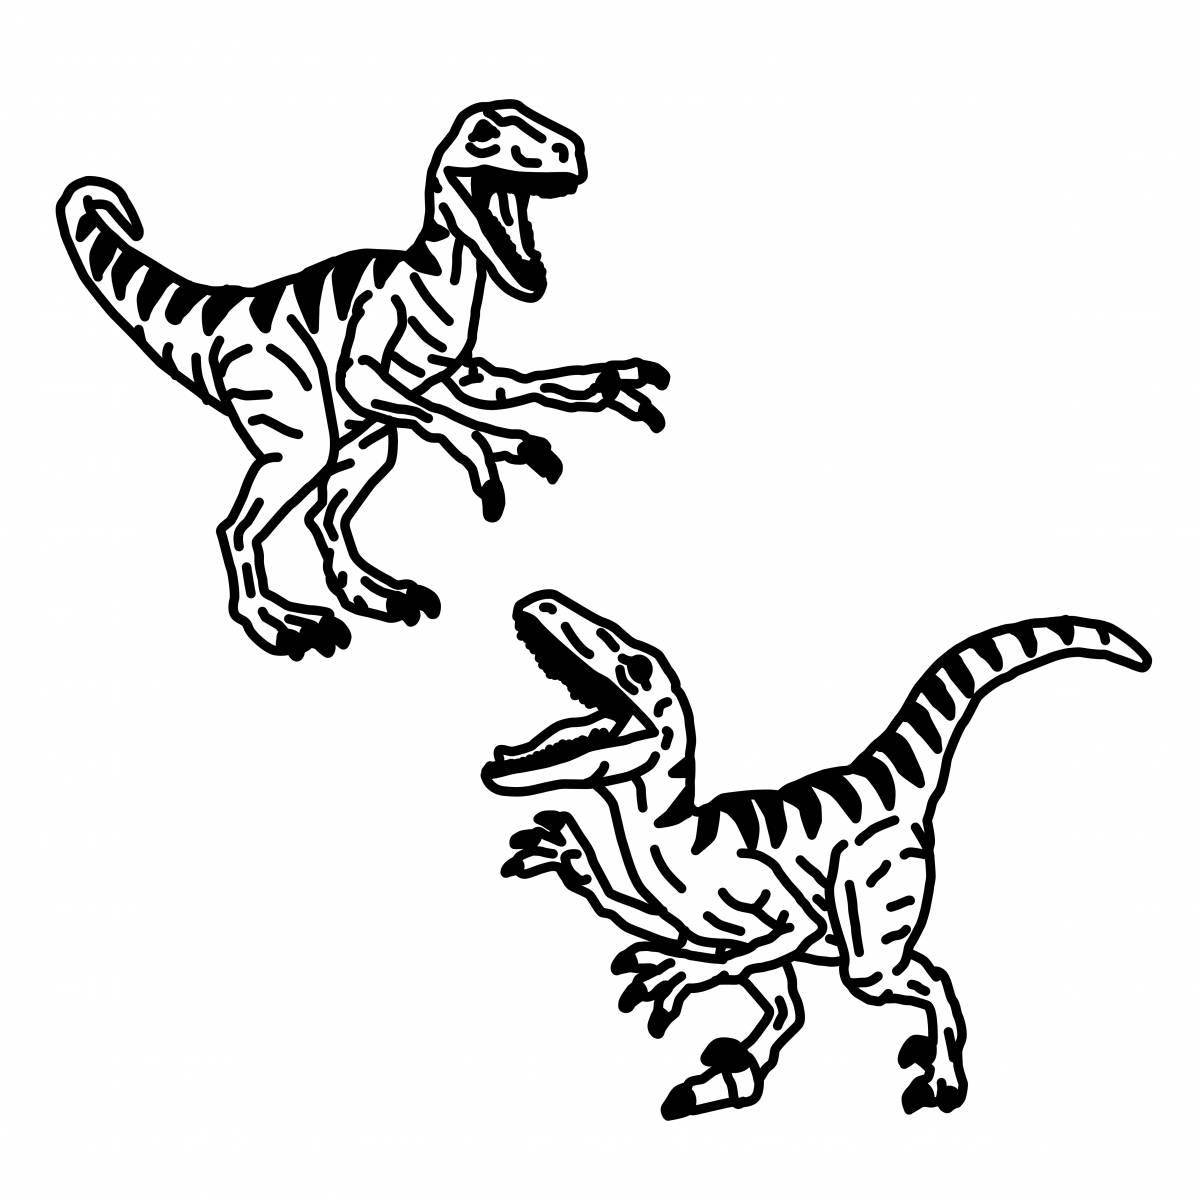 Velociraptor grand jurassic world coloring page